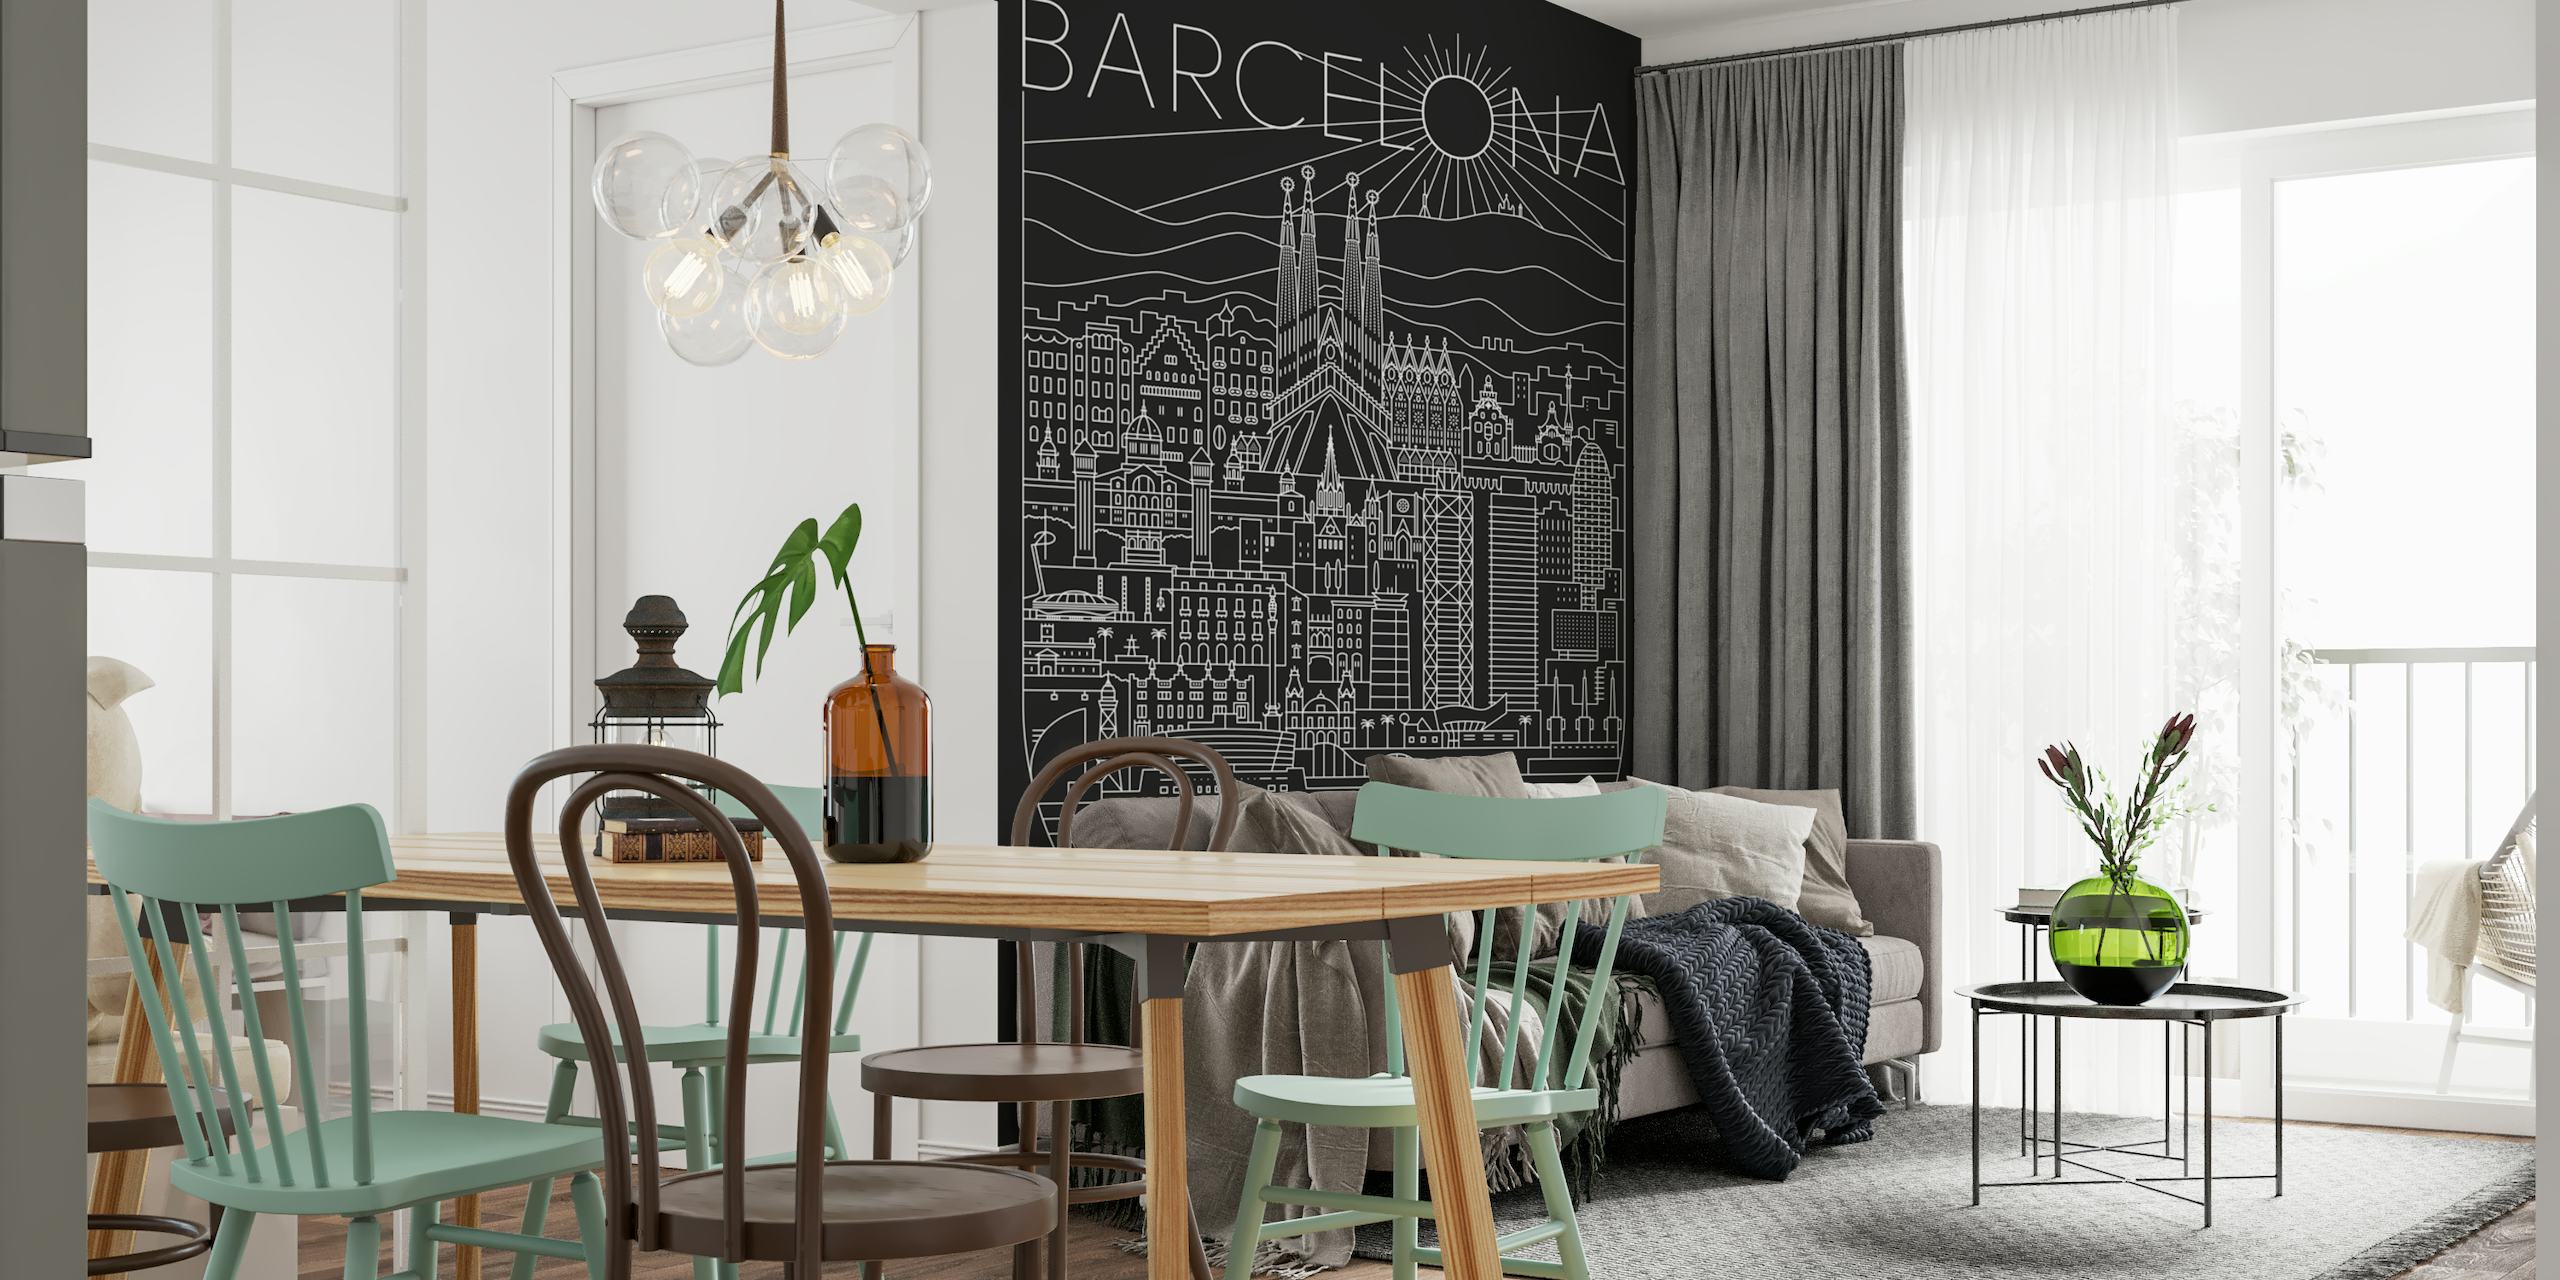 Mural de arte lineal que representa el paisaje urbano de Barcelona con aspectos destacados como la Sagrada Familia